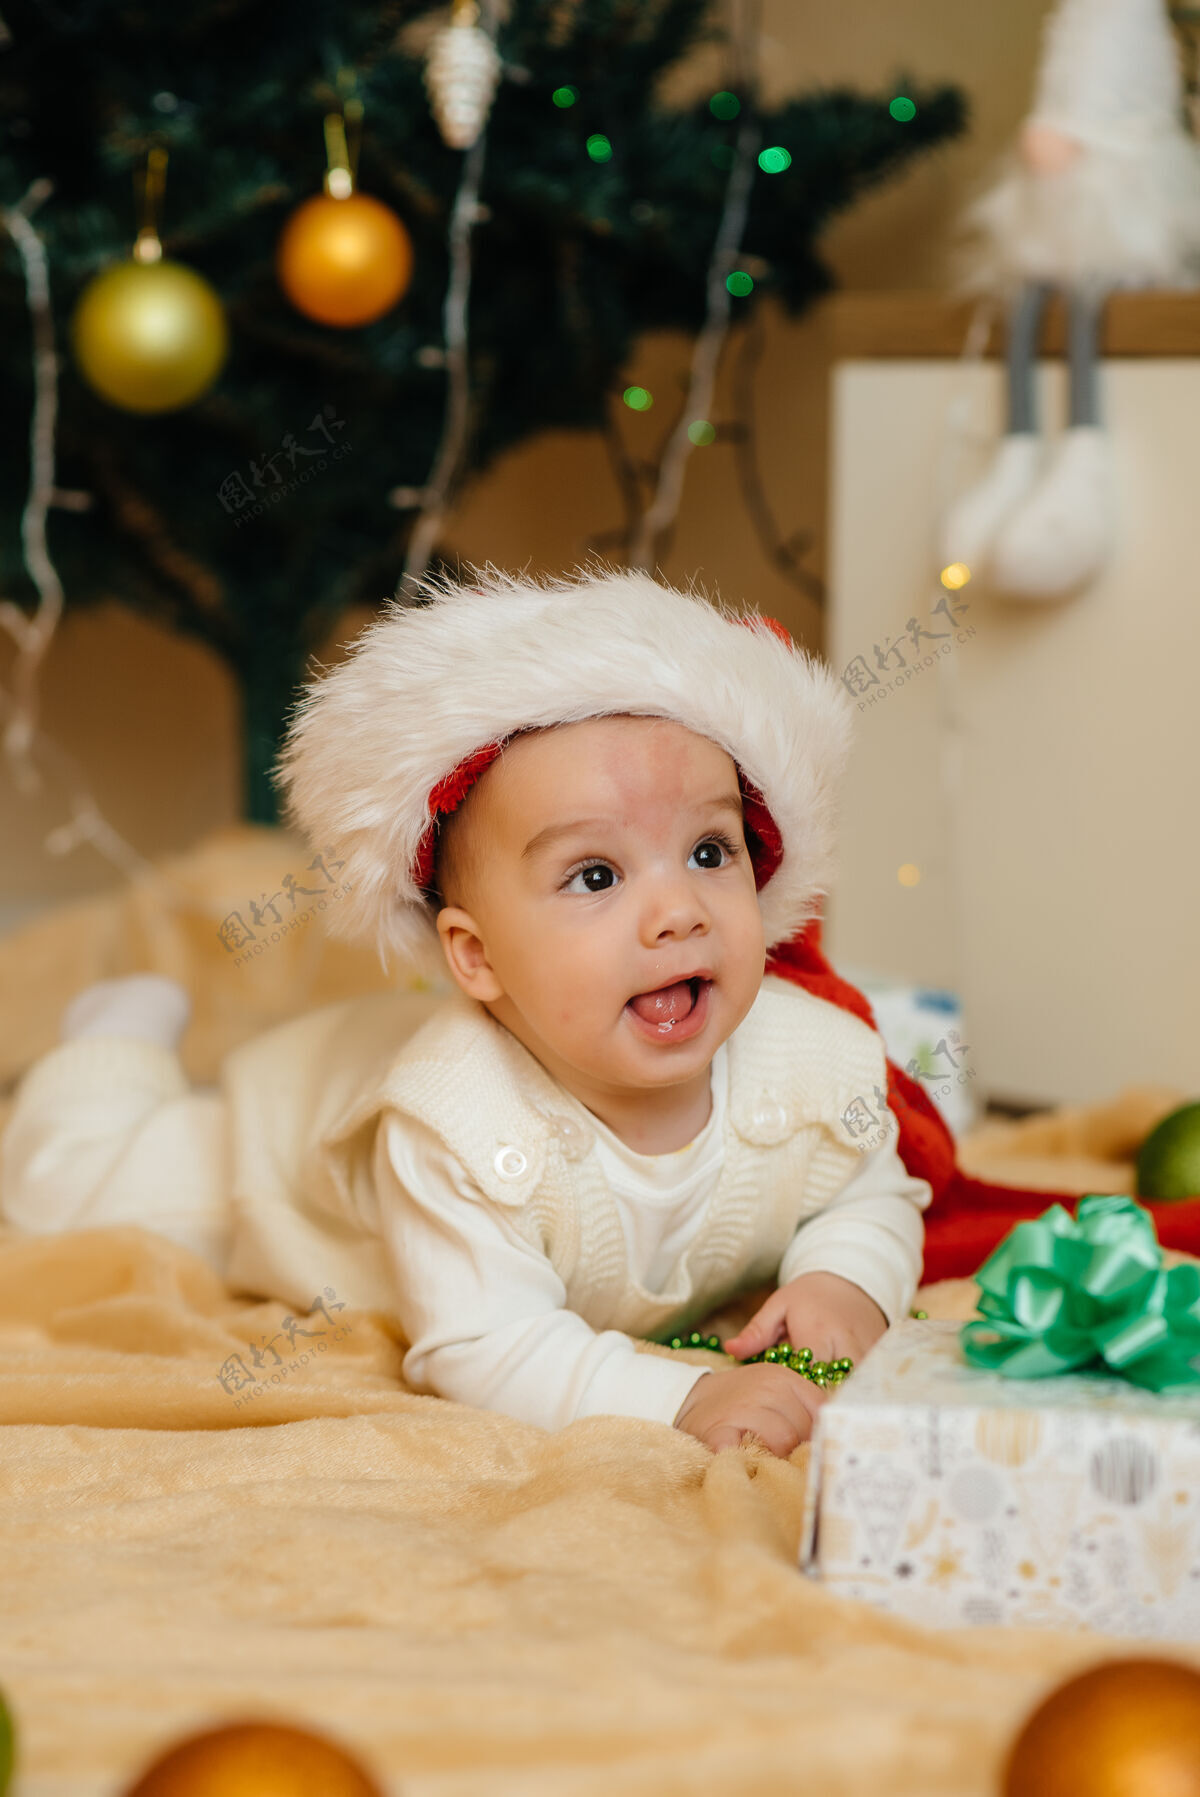 圣诞树可爱的微笑着的婴儿躺在圣诞树下和孩子们玩耍礼物.圣诞节还有新年庆祝活动房间年杉木